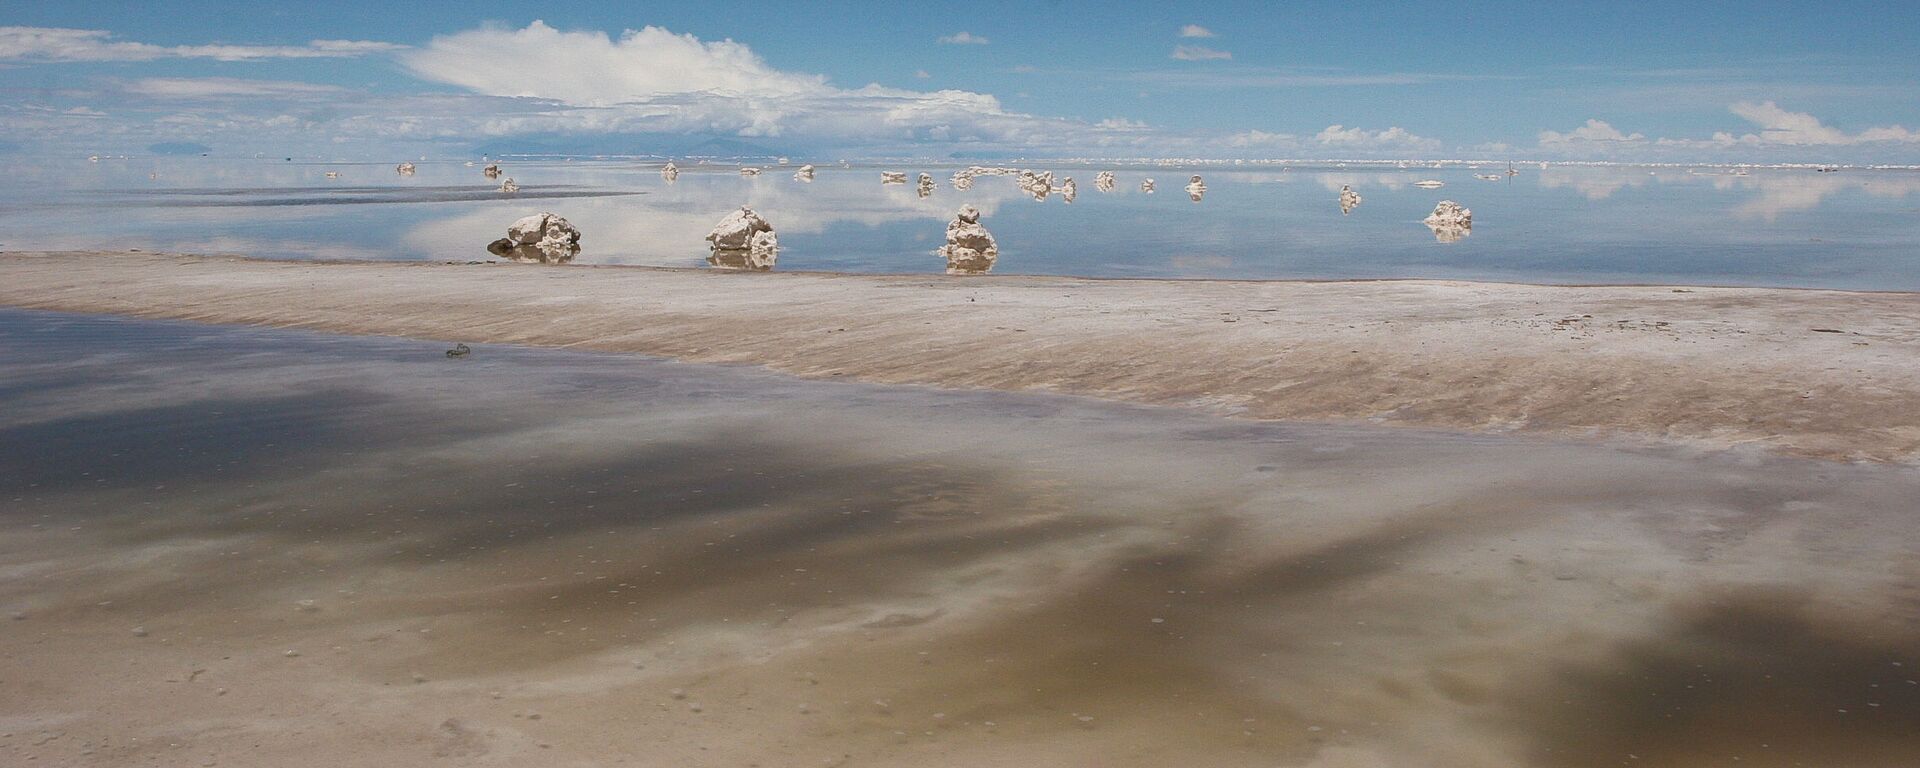 El salar de Uyuni en Bolivia, gran reserva de litio - Sputnik Mundo, 1920, 27.11.2019